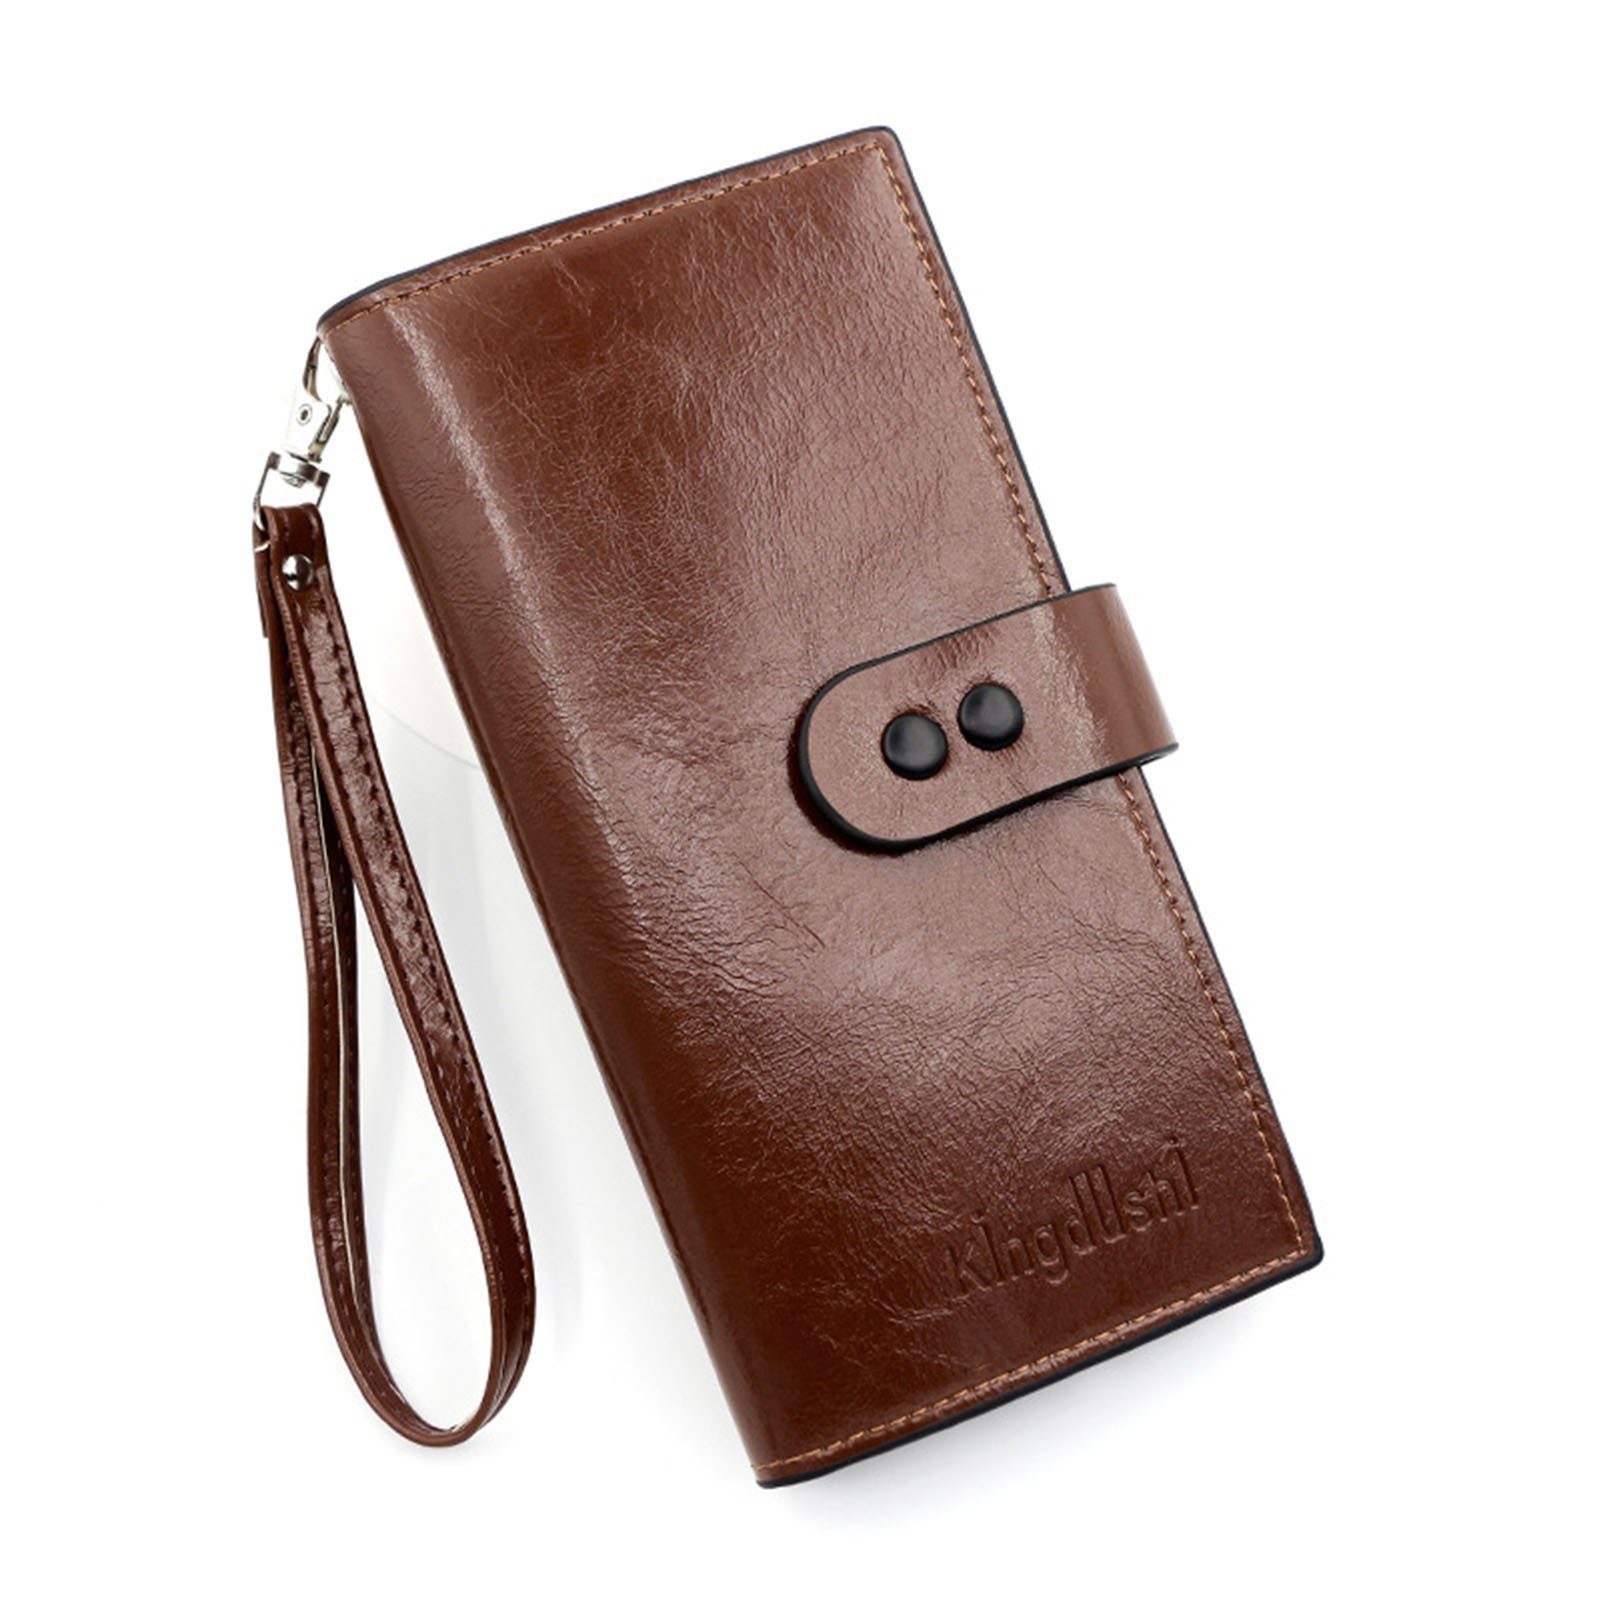 Blusmart Geldbörse Damen-Clutch In Reiner Farbe, Lange Clutch, Geldbörse, Handtasche, Unterarmtasche r8243 brown